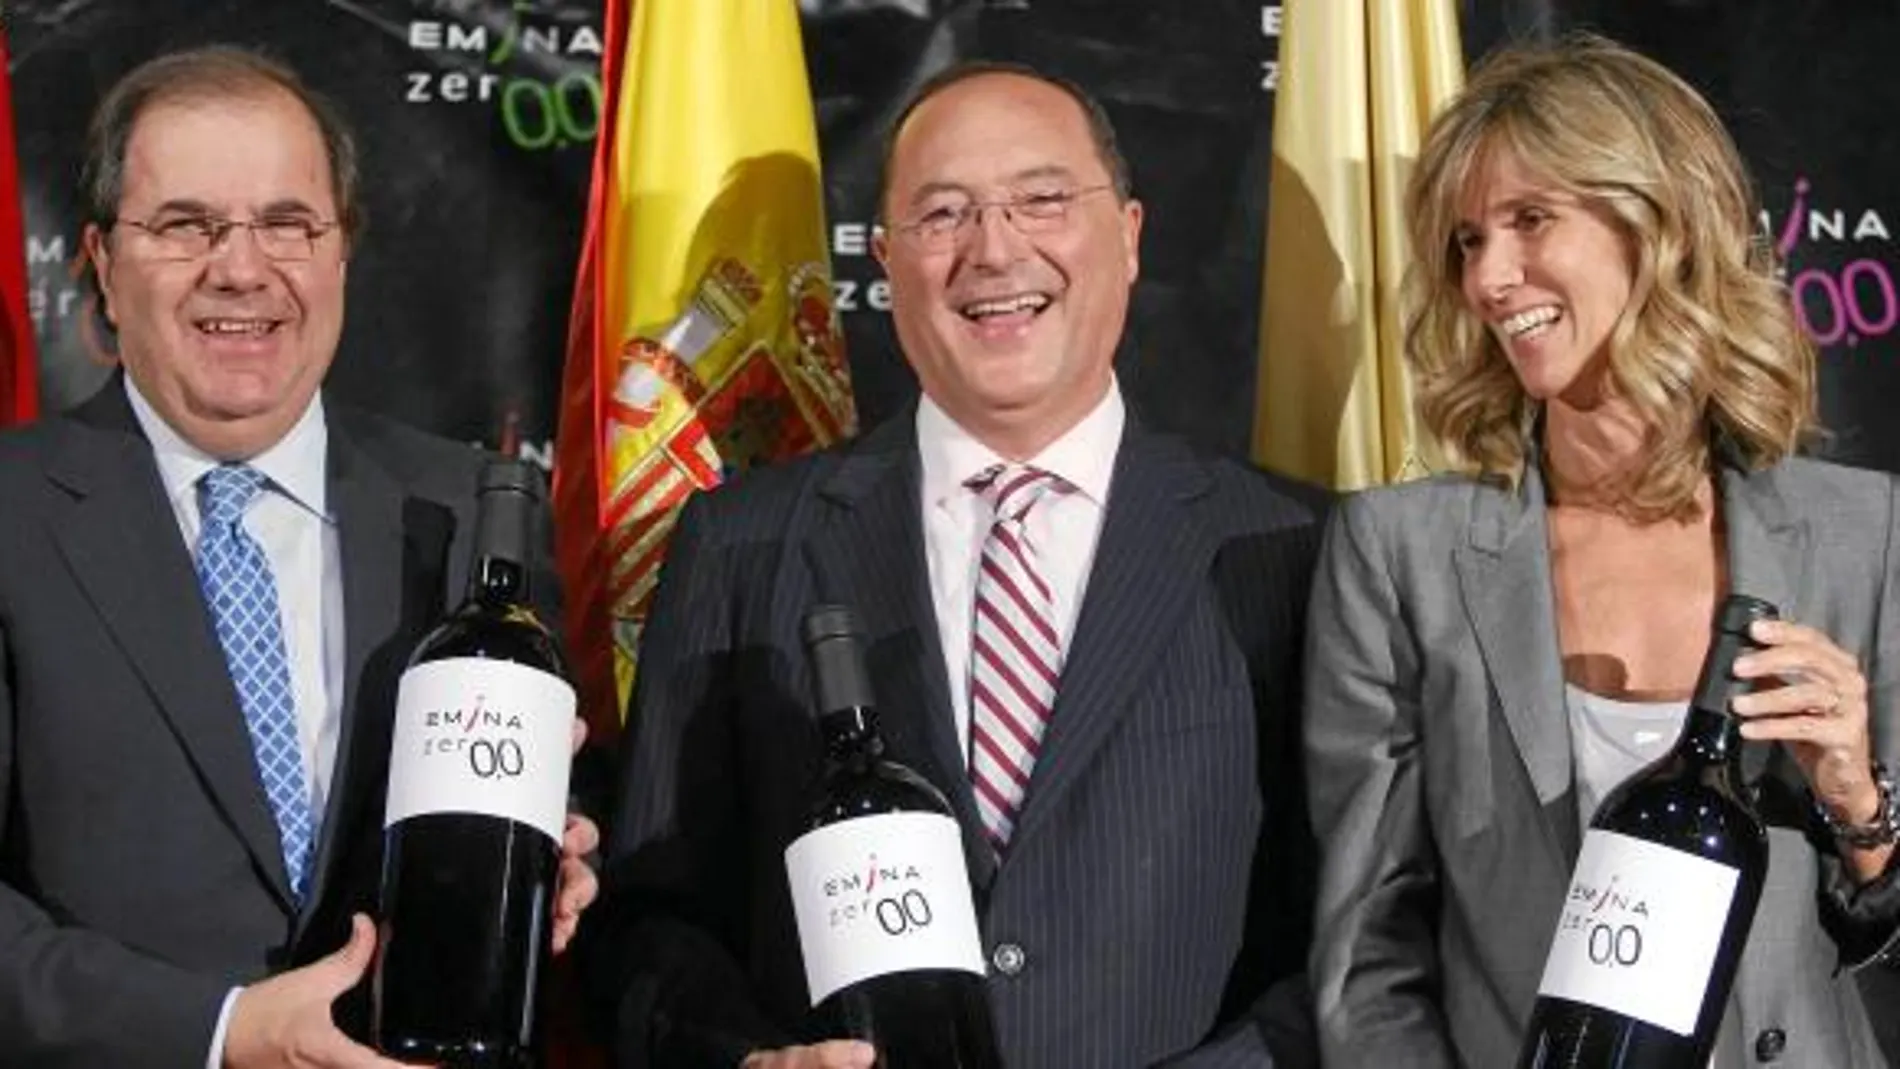 Juan Vicente Herrera, Carlos Moro y Cristina Garmendia sostienen botellas de Emina 0'0